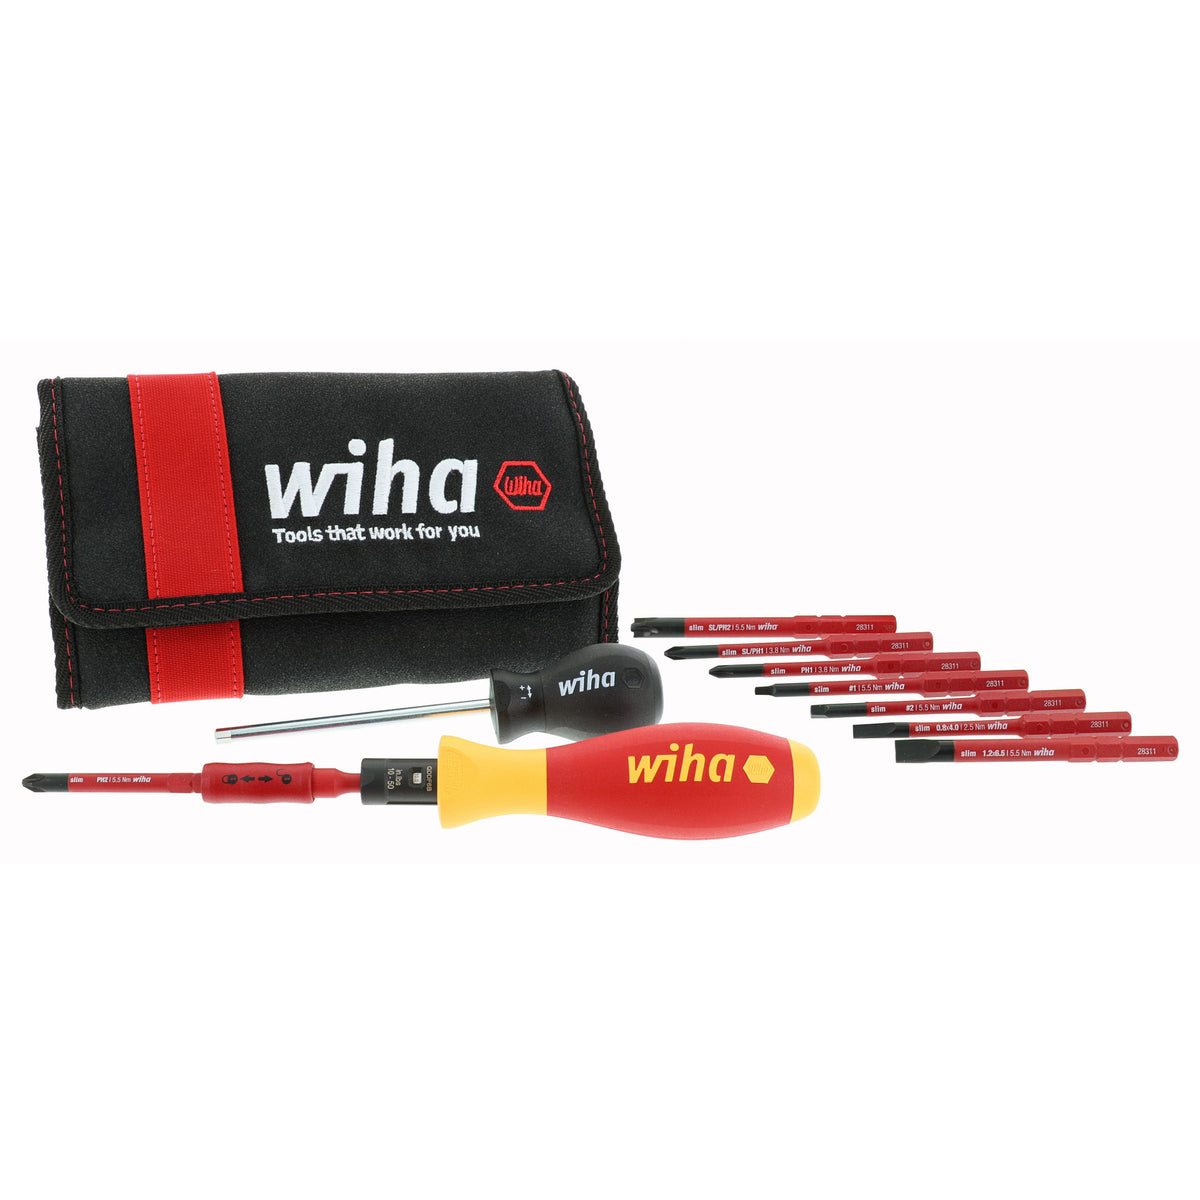 WIHA Kit de Herramientas para Electricista marca WIHA, Número de Piezas 8 -  Juegos Maestros - 450G62